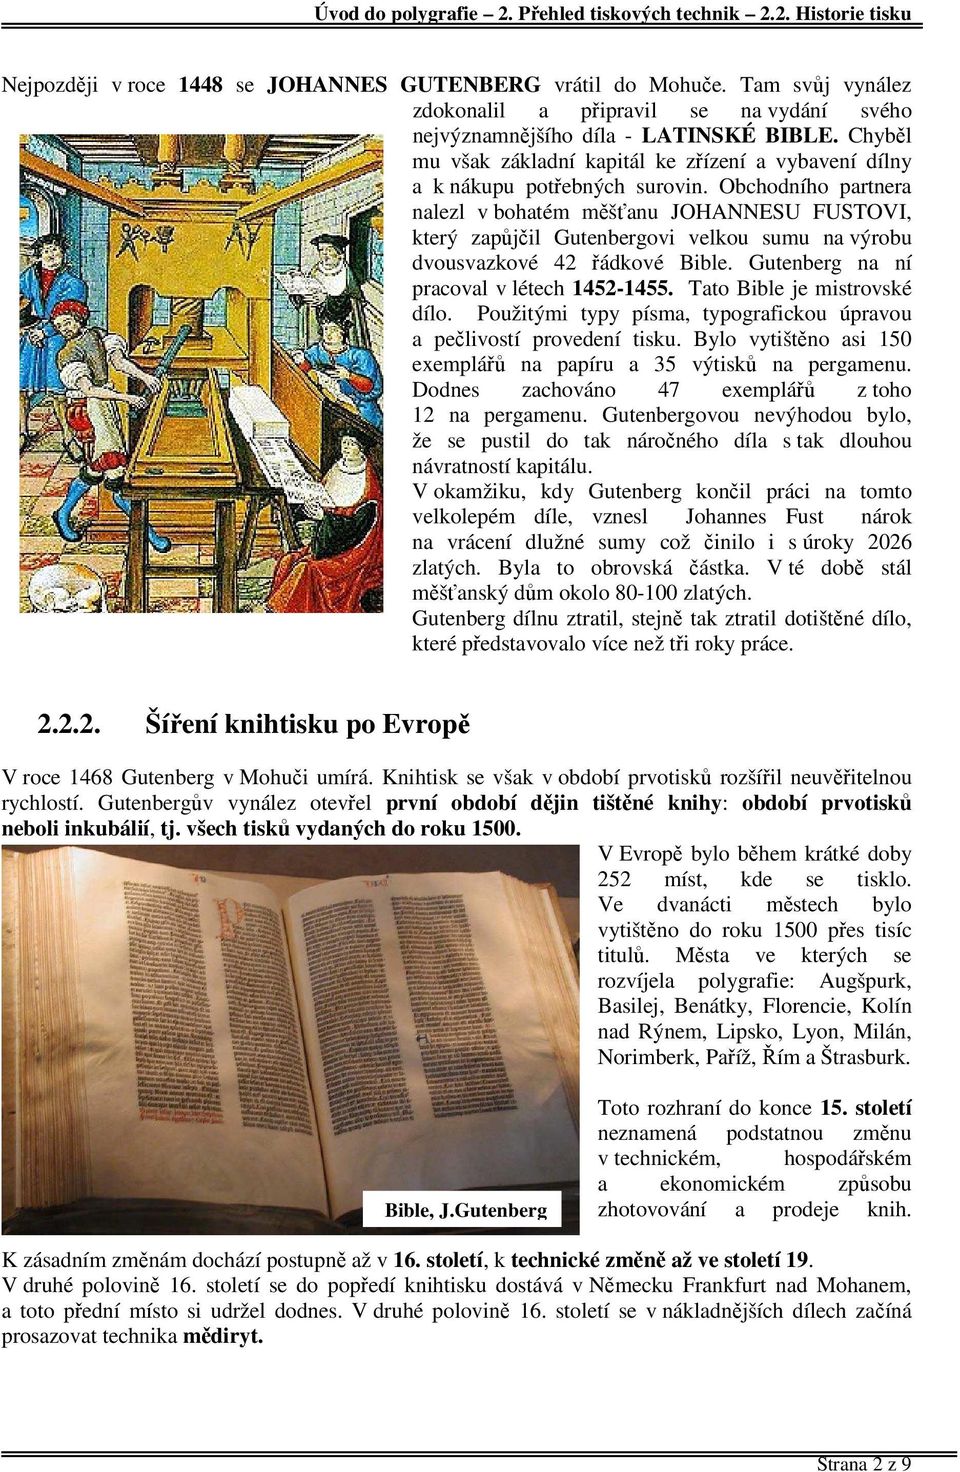 Obchodního partnera nalezl v bohatém měšťanu JOHANNESU FUSTOVI, který zapůjčil Gutenbergovi velkou sumu na výrobu dvousvazkové 42 řádkové Bible. Gutenberg na ní pracoval v létech 1452-1455.